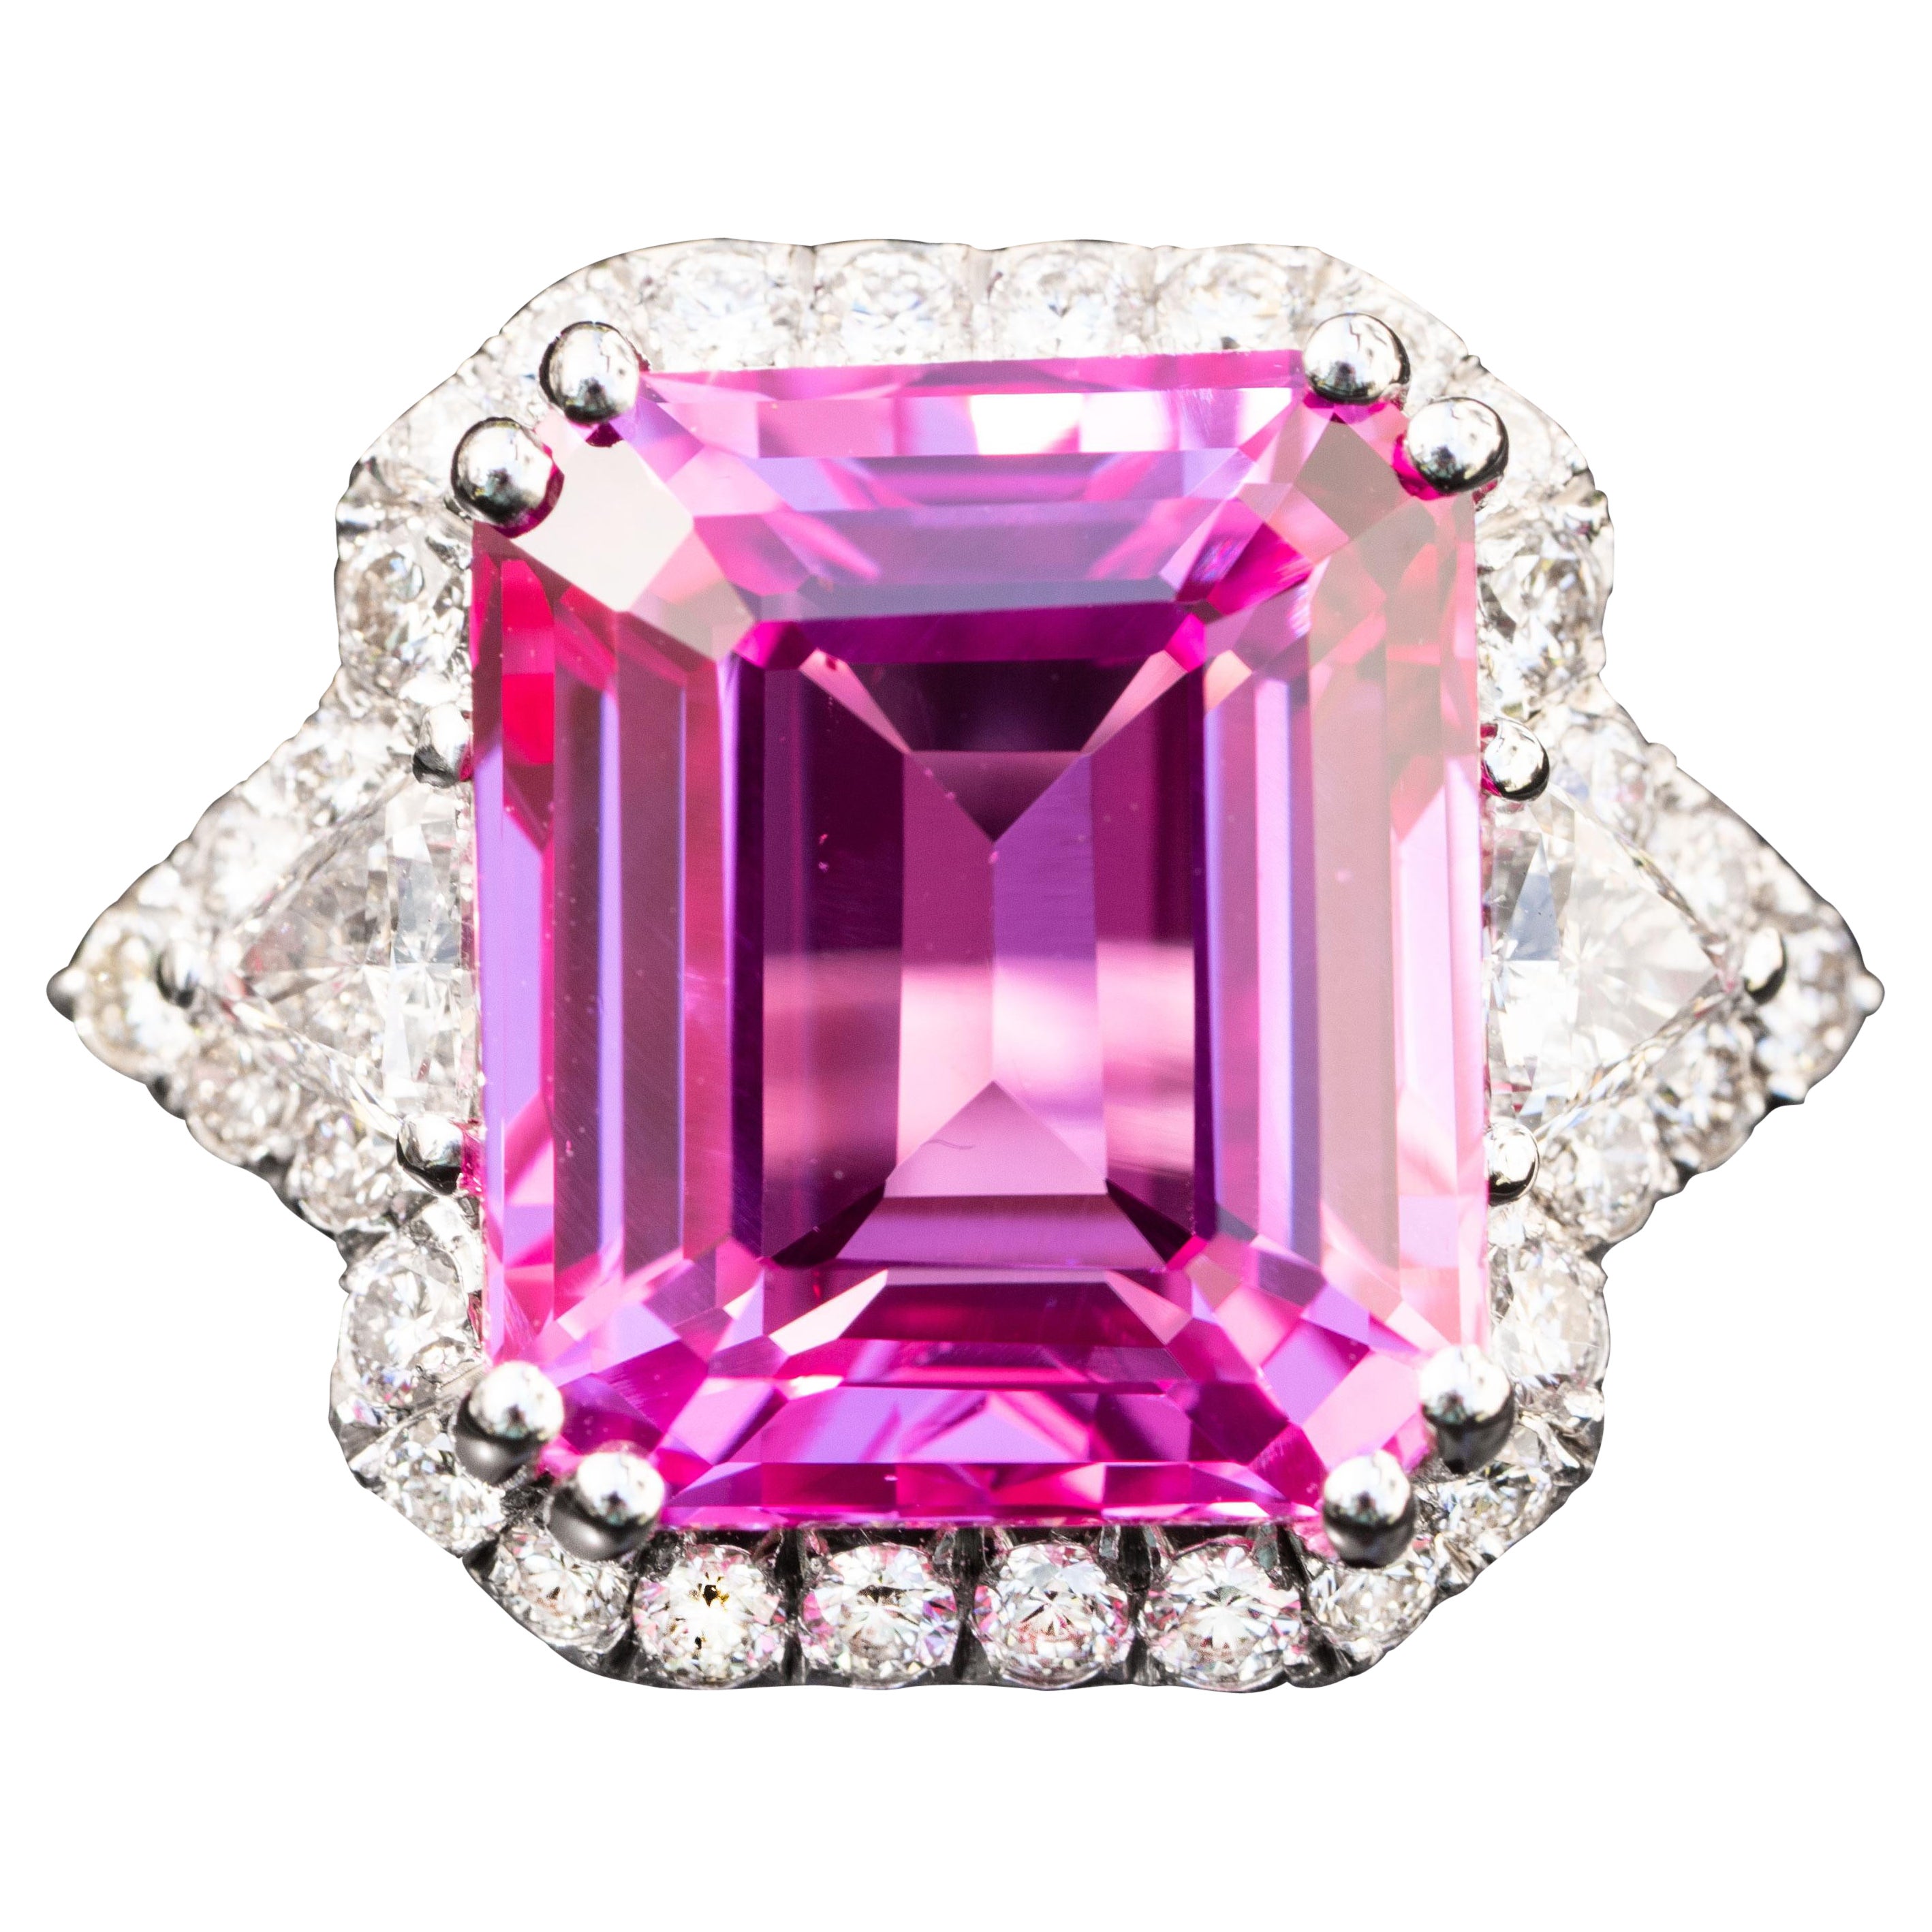 13.00 carat pink sapphire ring 1.20 carat natural diamonds statement ring